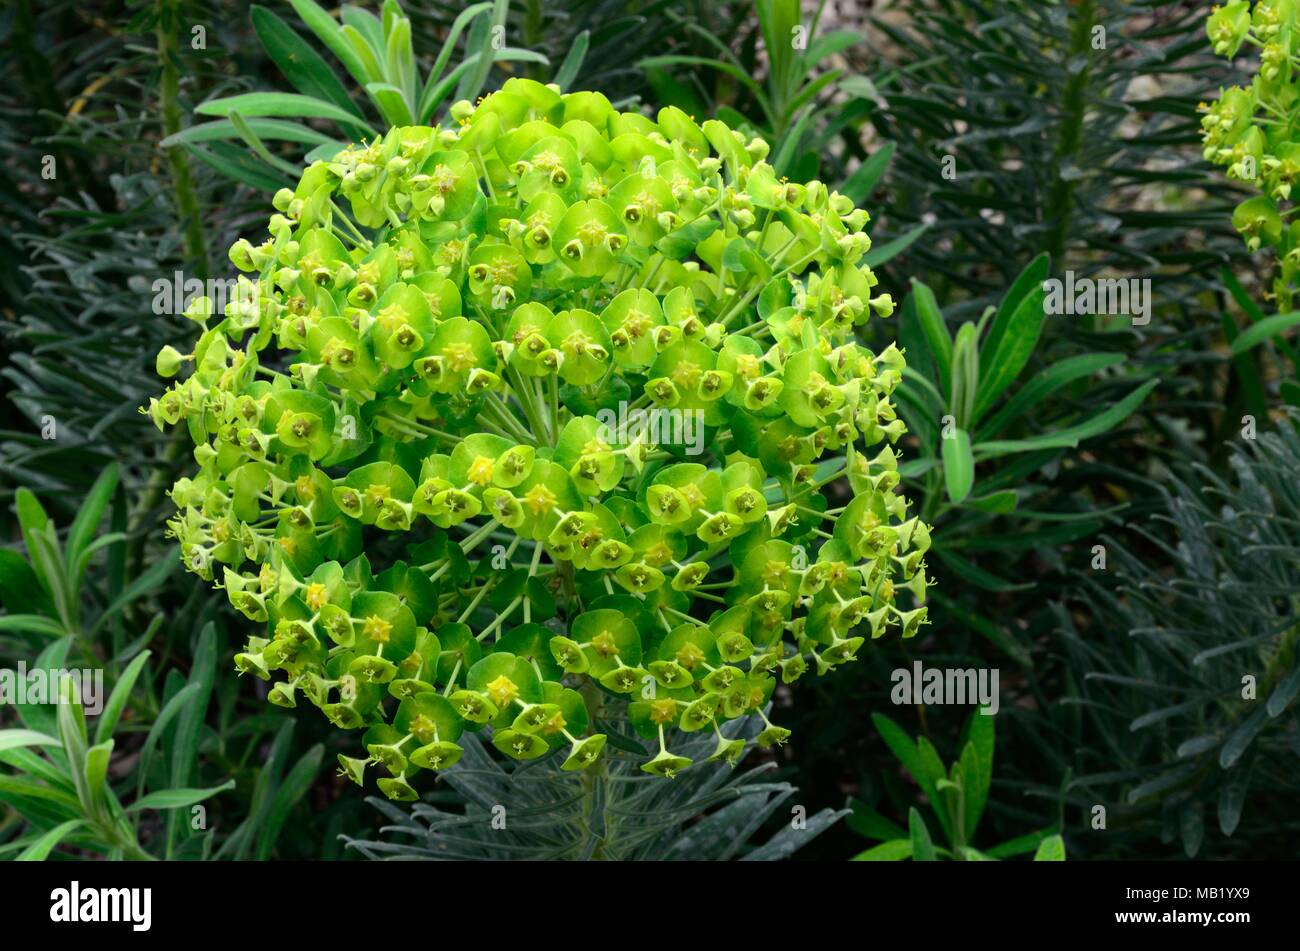 Euphorbia dendroides Tree Spurge Euphorbiaceae family Stock Photo